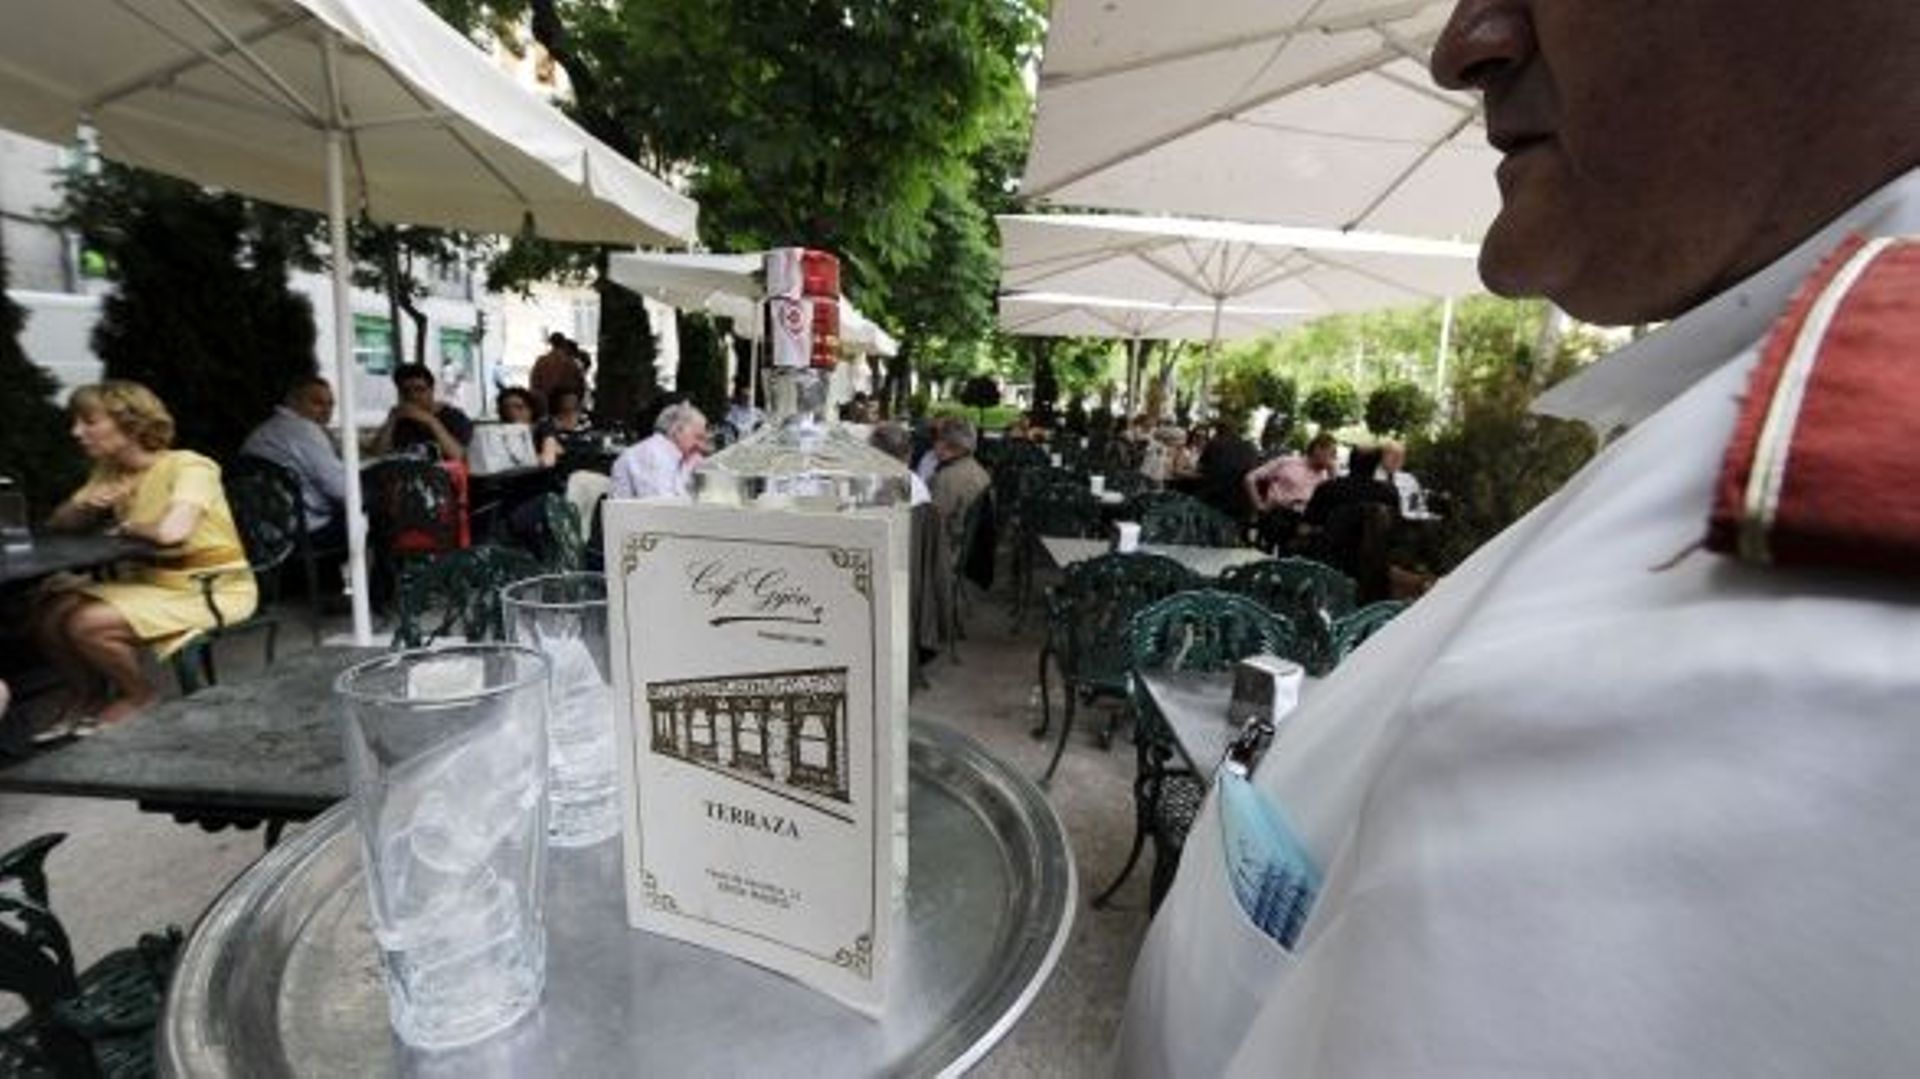 Le Café Gijon, lieu emblématique de Madrid, échappe à la menace de fermeture